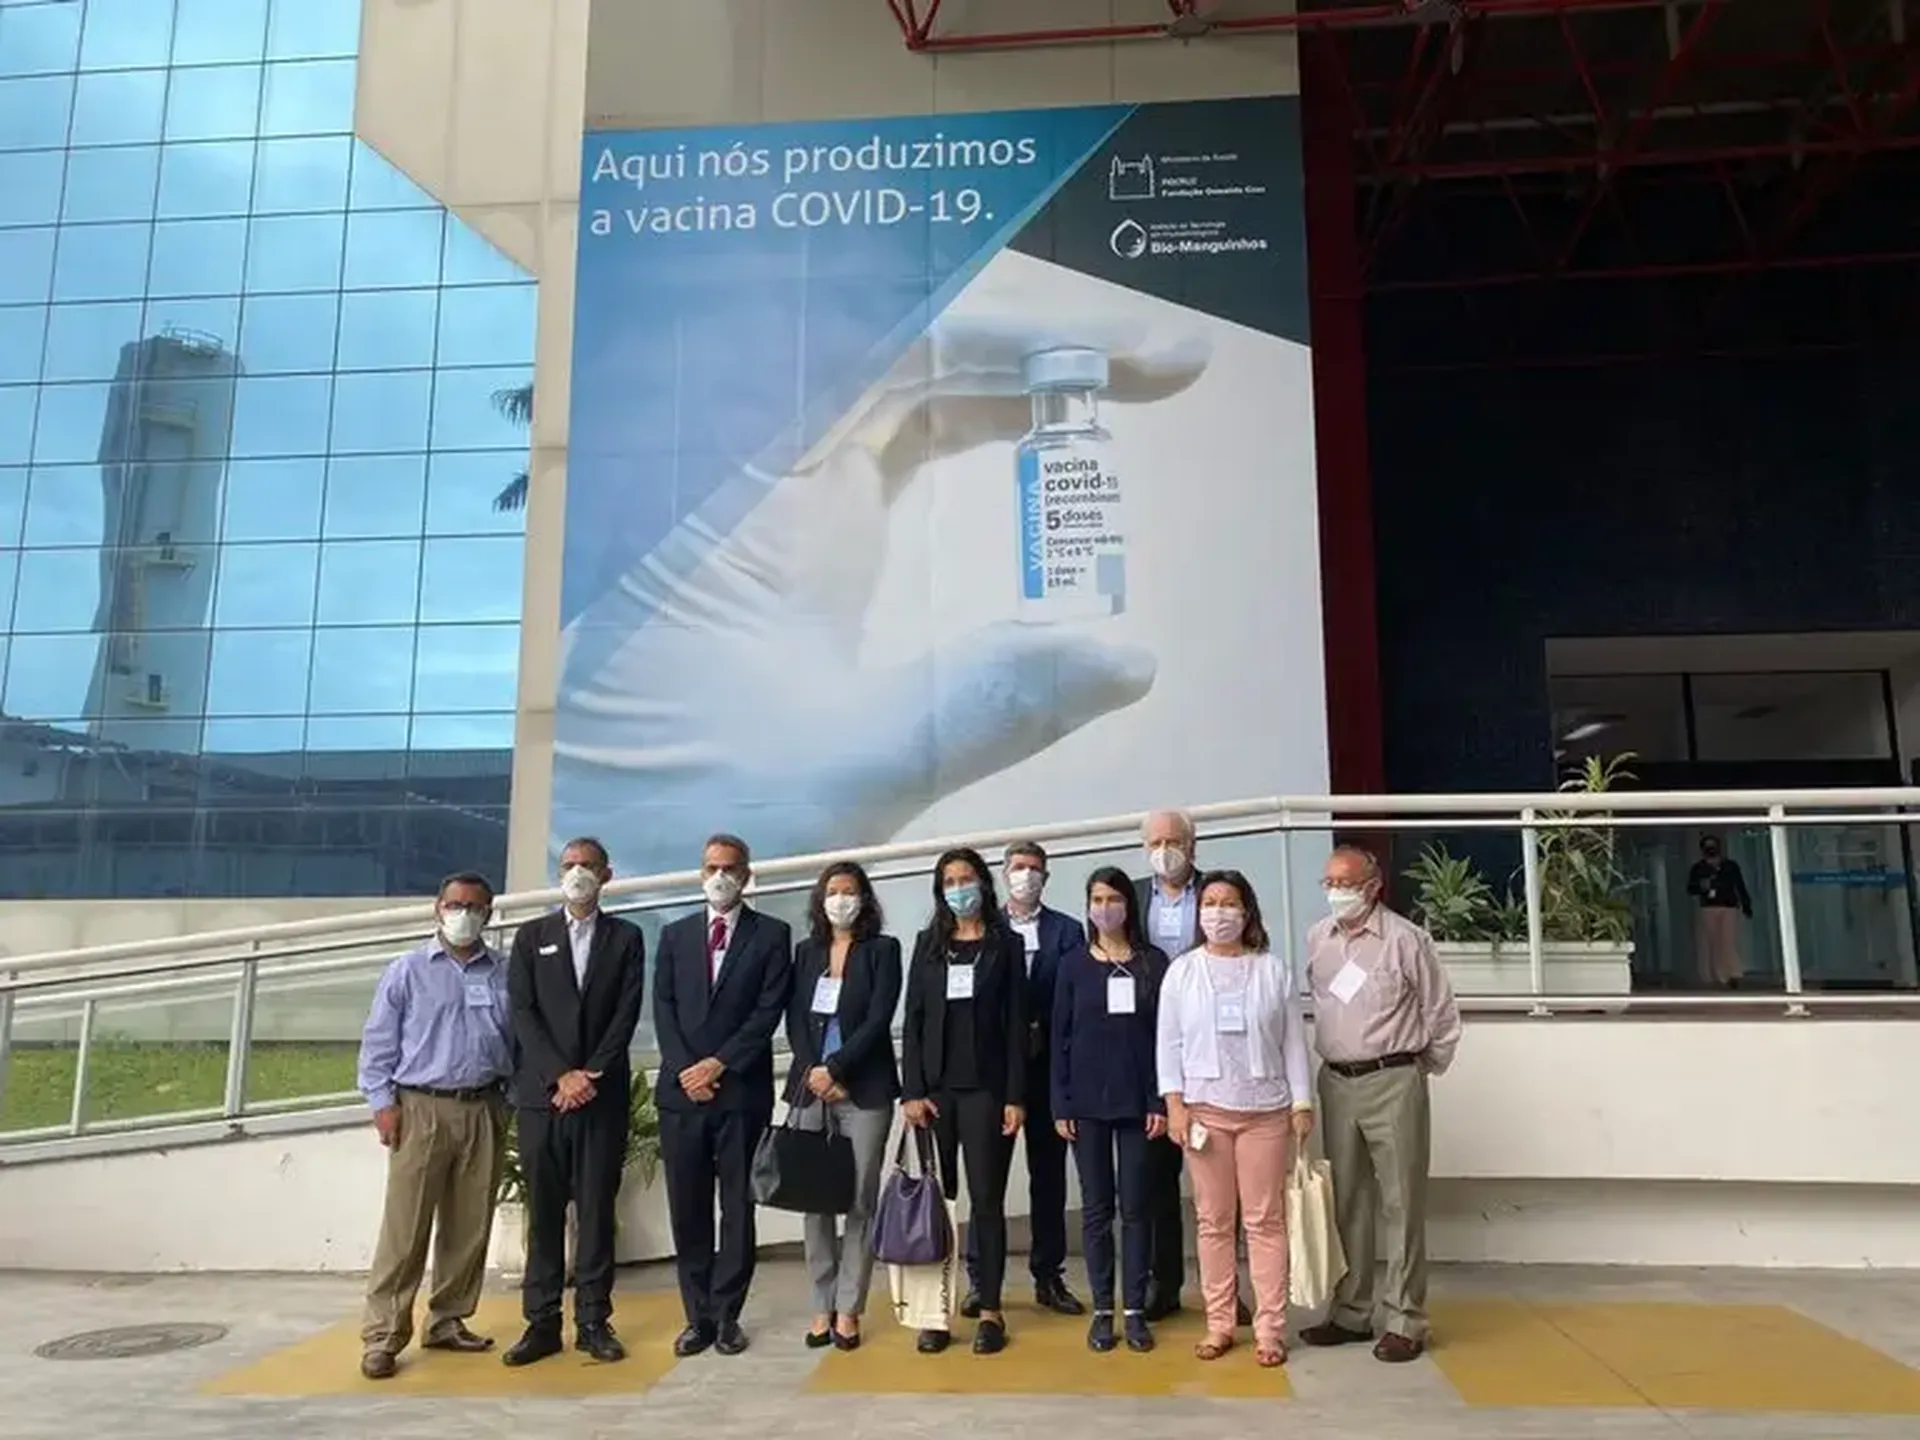 Representantes de países do Mercosul visitam instalações de produção de vacinas Covid-19 da Fiocruz